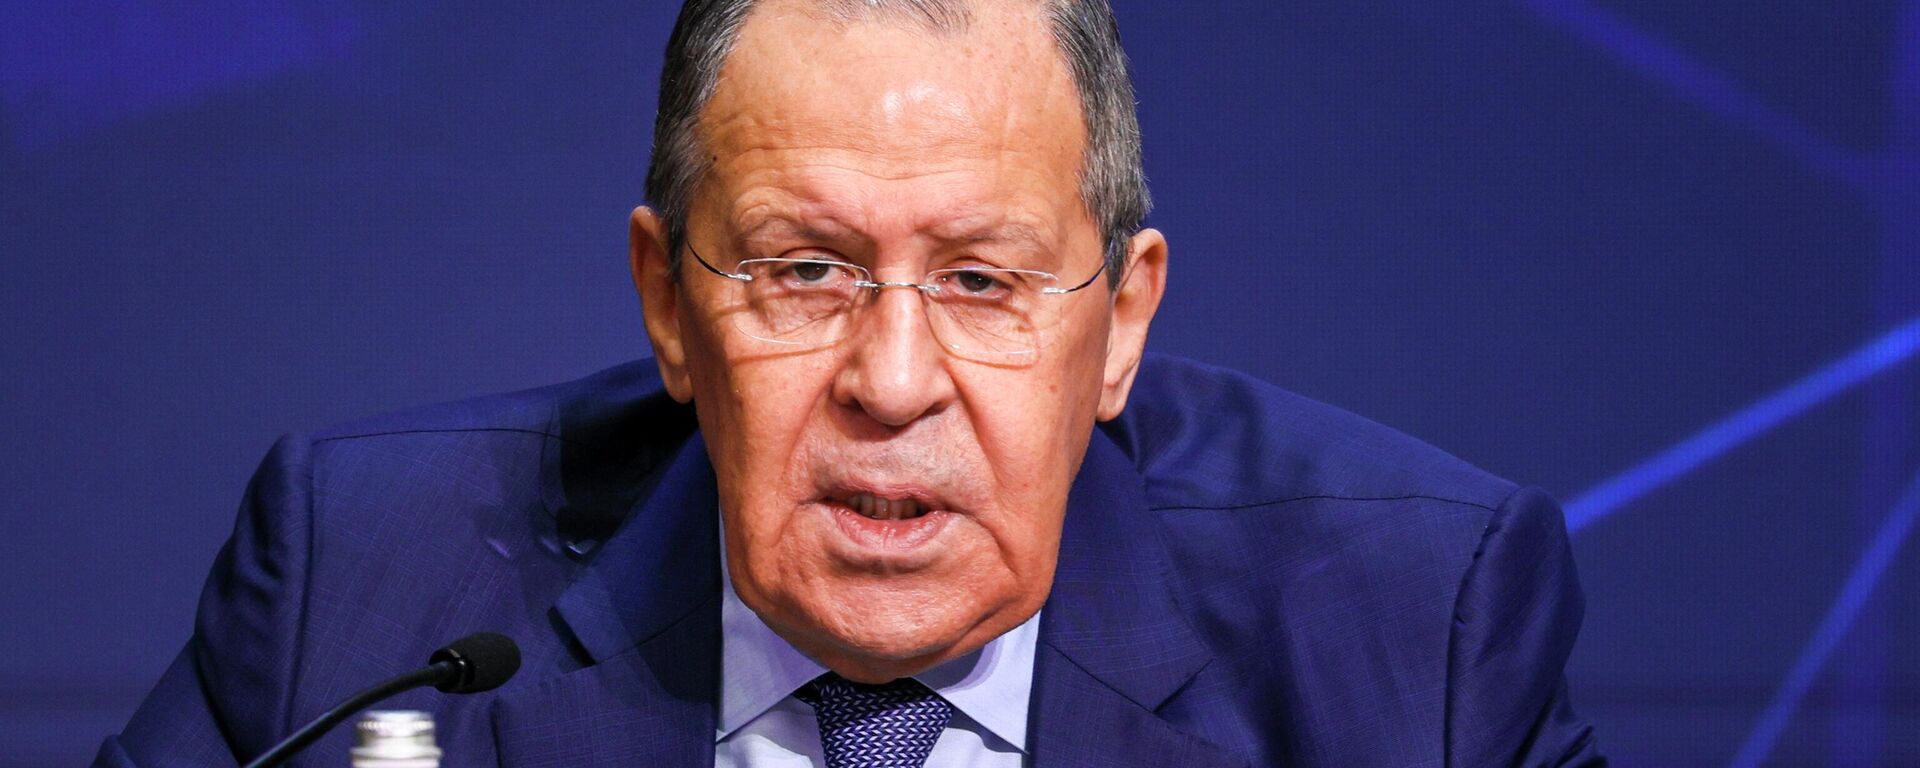 Ministro das Relações Exteriores da Rússia, Sergei Lavrov, participa de conferência sobre relações internacionais, em Moscou, na Rússia, em 14 de abril de 2022 - Sputnik Brasil, 1920, 27.05.2022